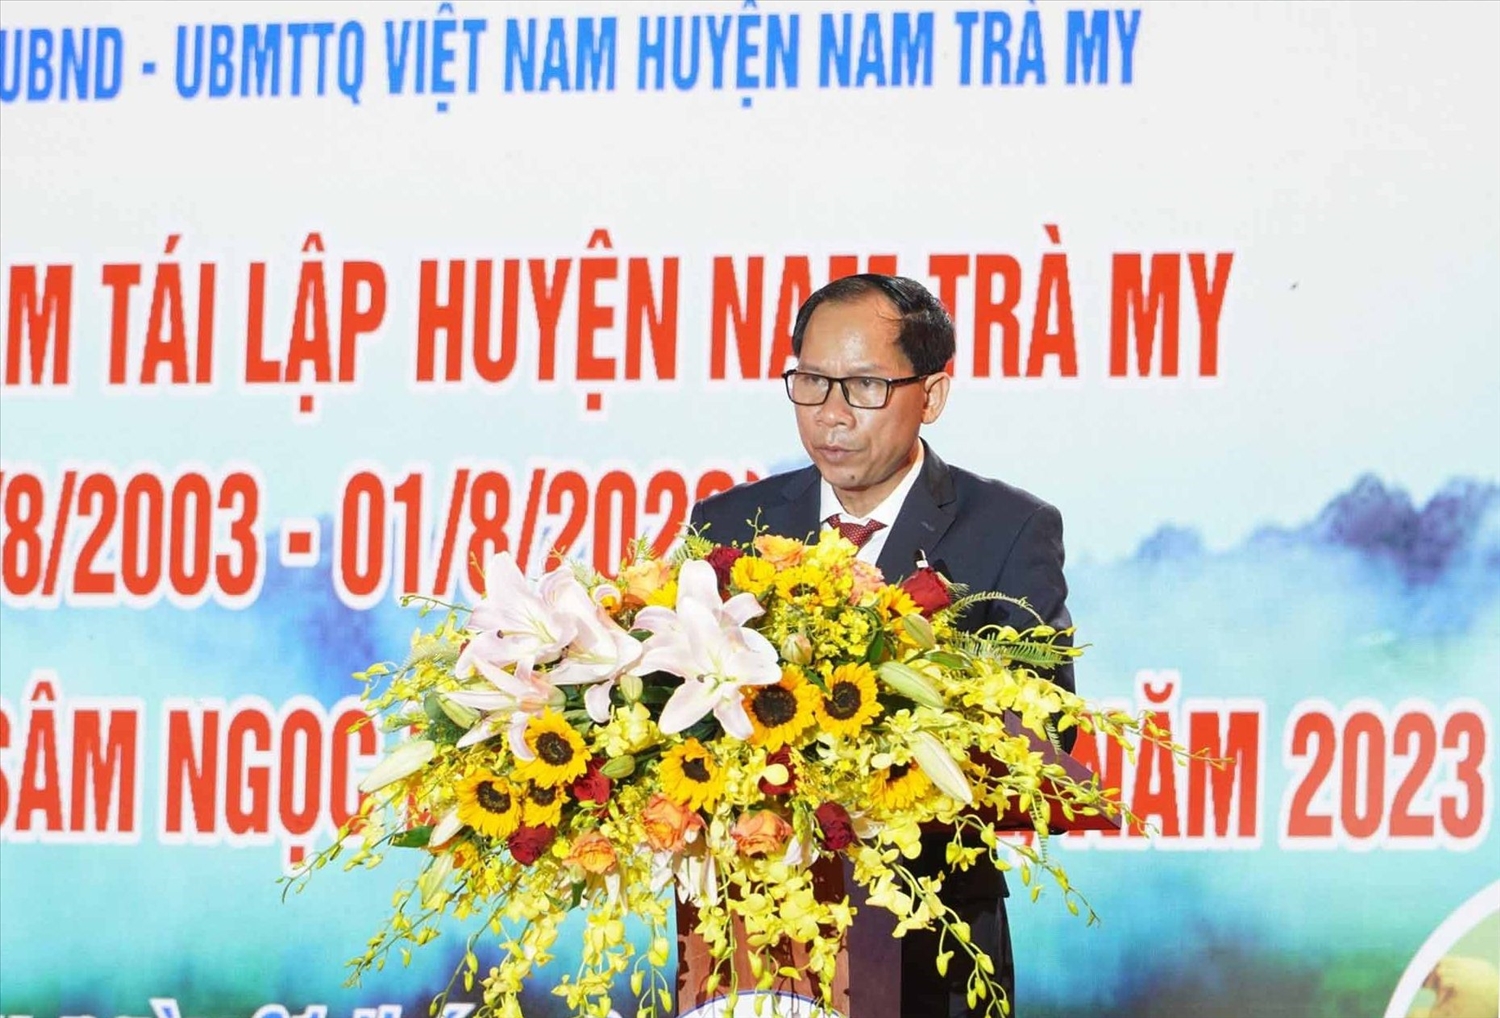 Bí thư Huyện ủy Nam Trà My - Lê Thanh Hưng ôn lại chặng đường 20 năm hình thành và phát triển của huyện